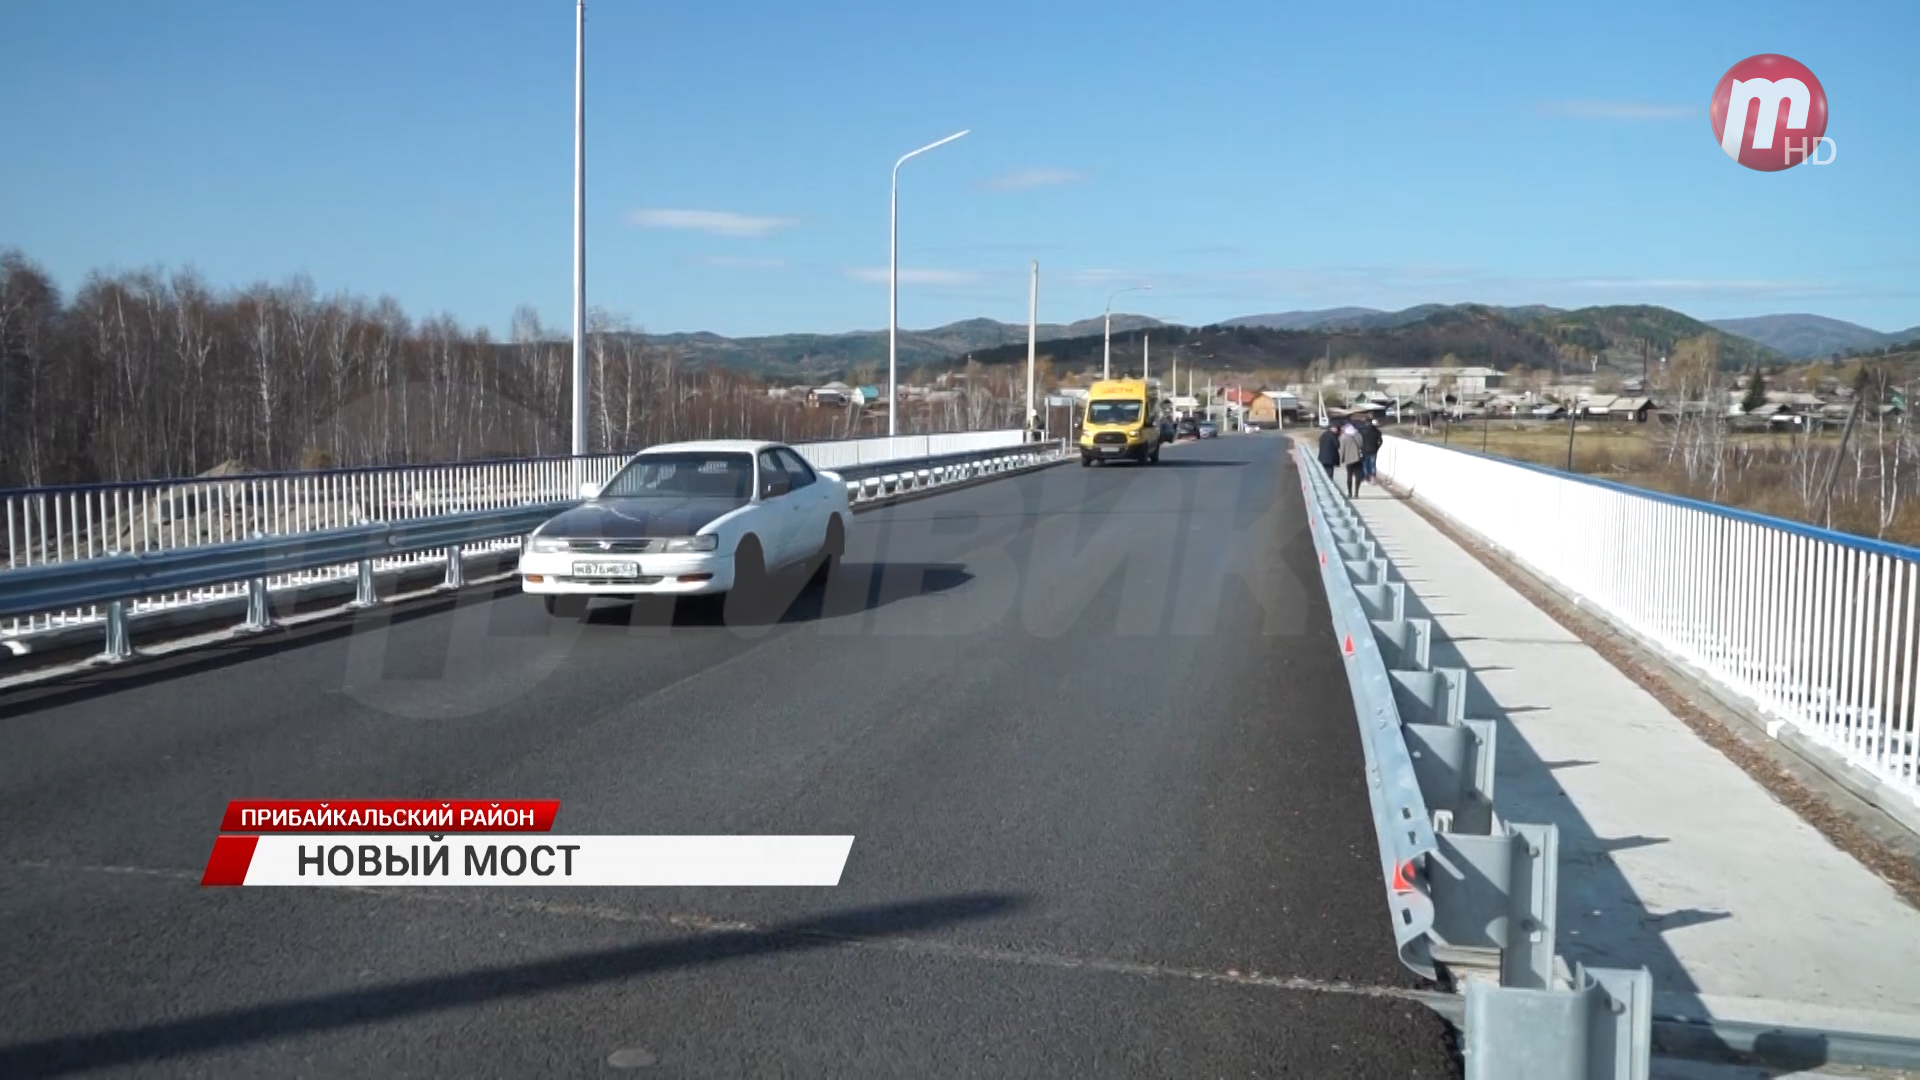 В Прибайкальском районе Бурятии завершаются работы по реконструкции моста